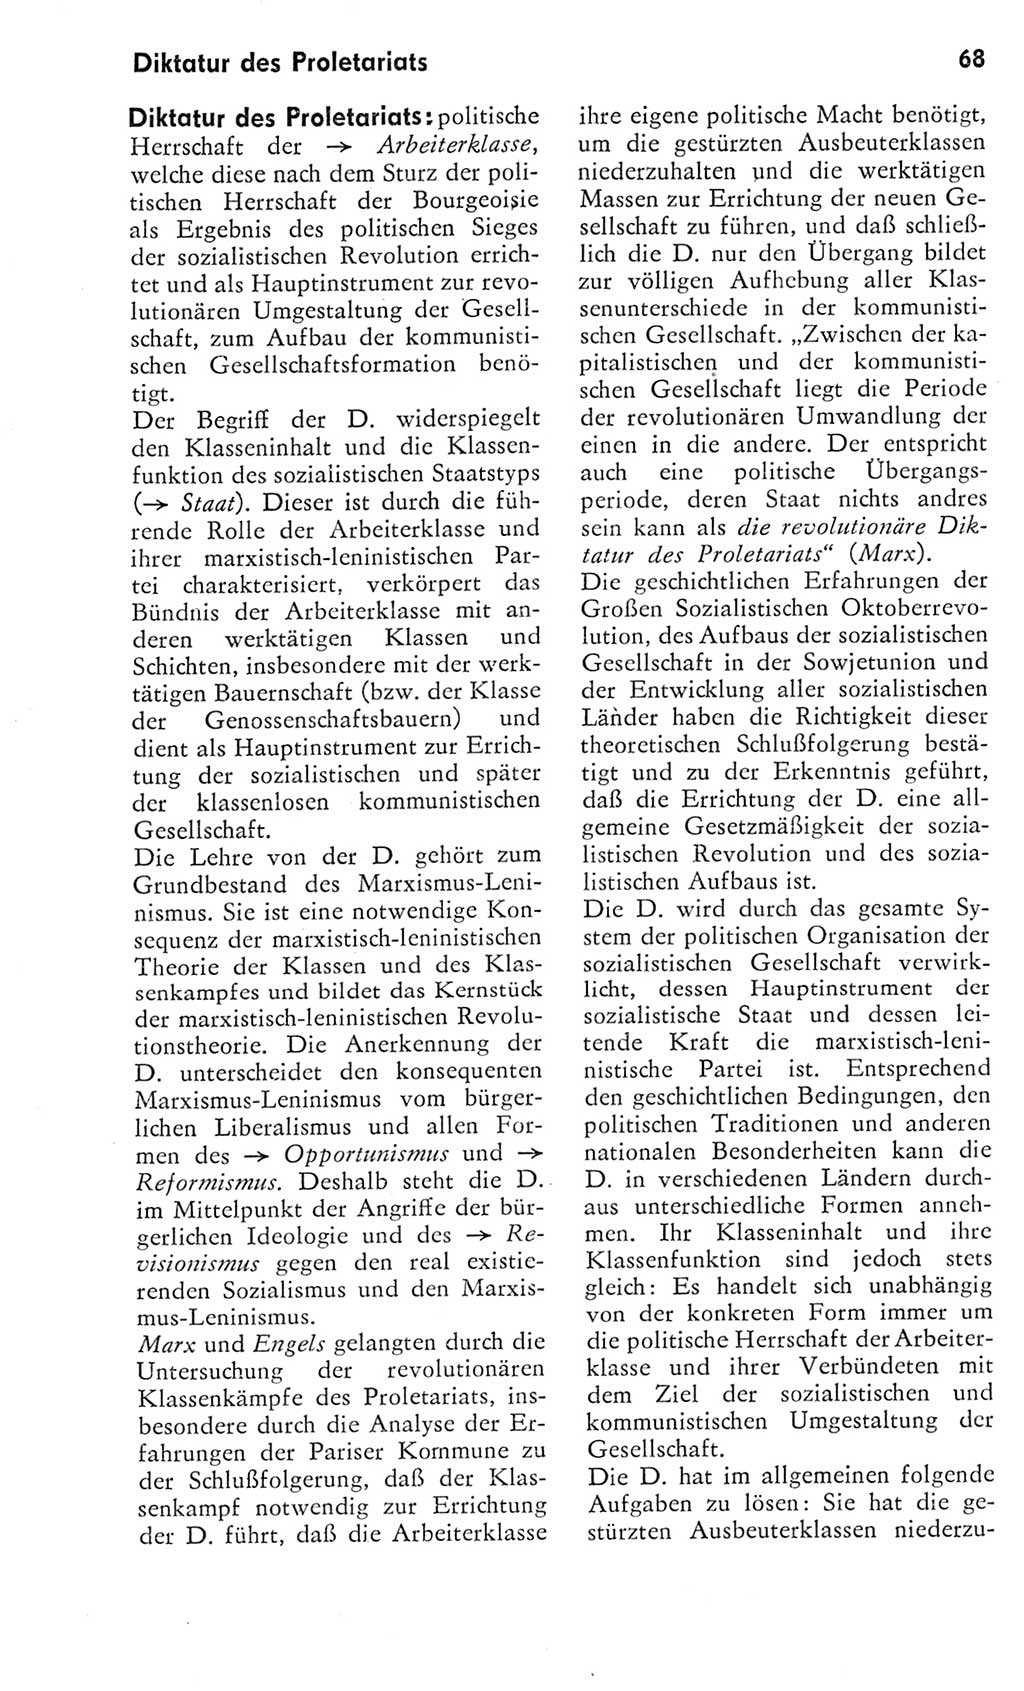 Kleines Wörterbuch der marxistisch-leninistischen Philosophie [Deutsche Demokratische Republik (DDR)] 1975, Seite 68 (Kl. Wb. ML Phil. DDR 1975, S. 68)